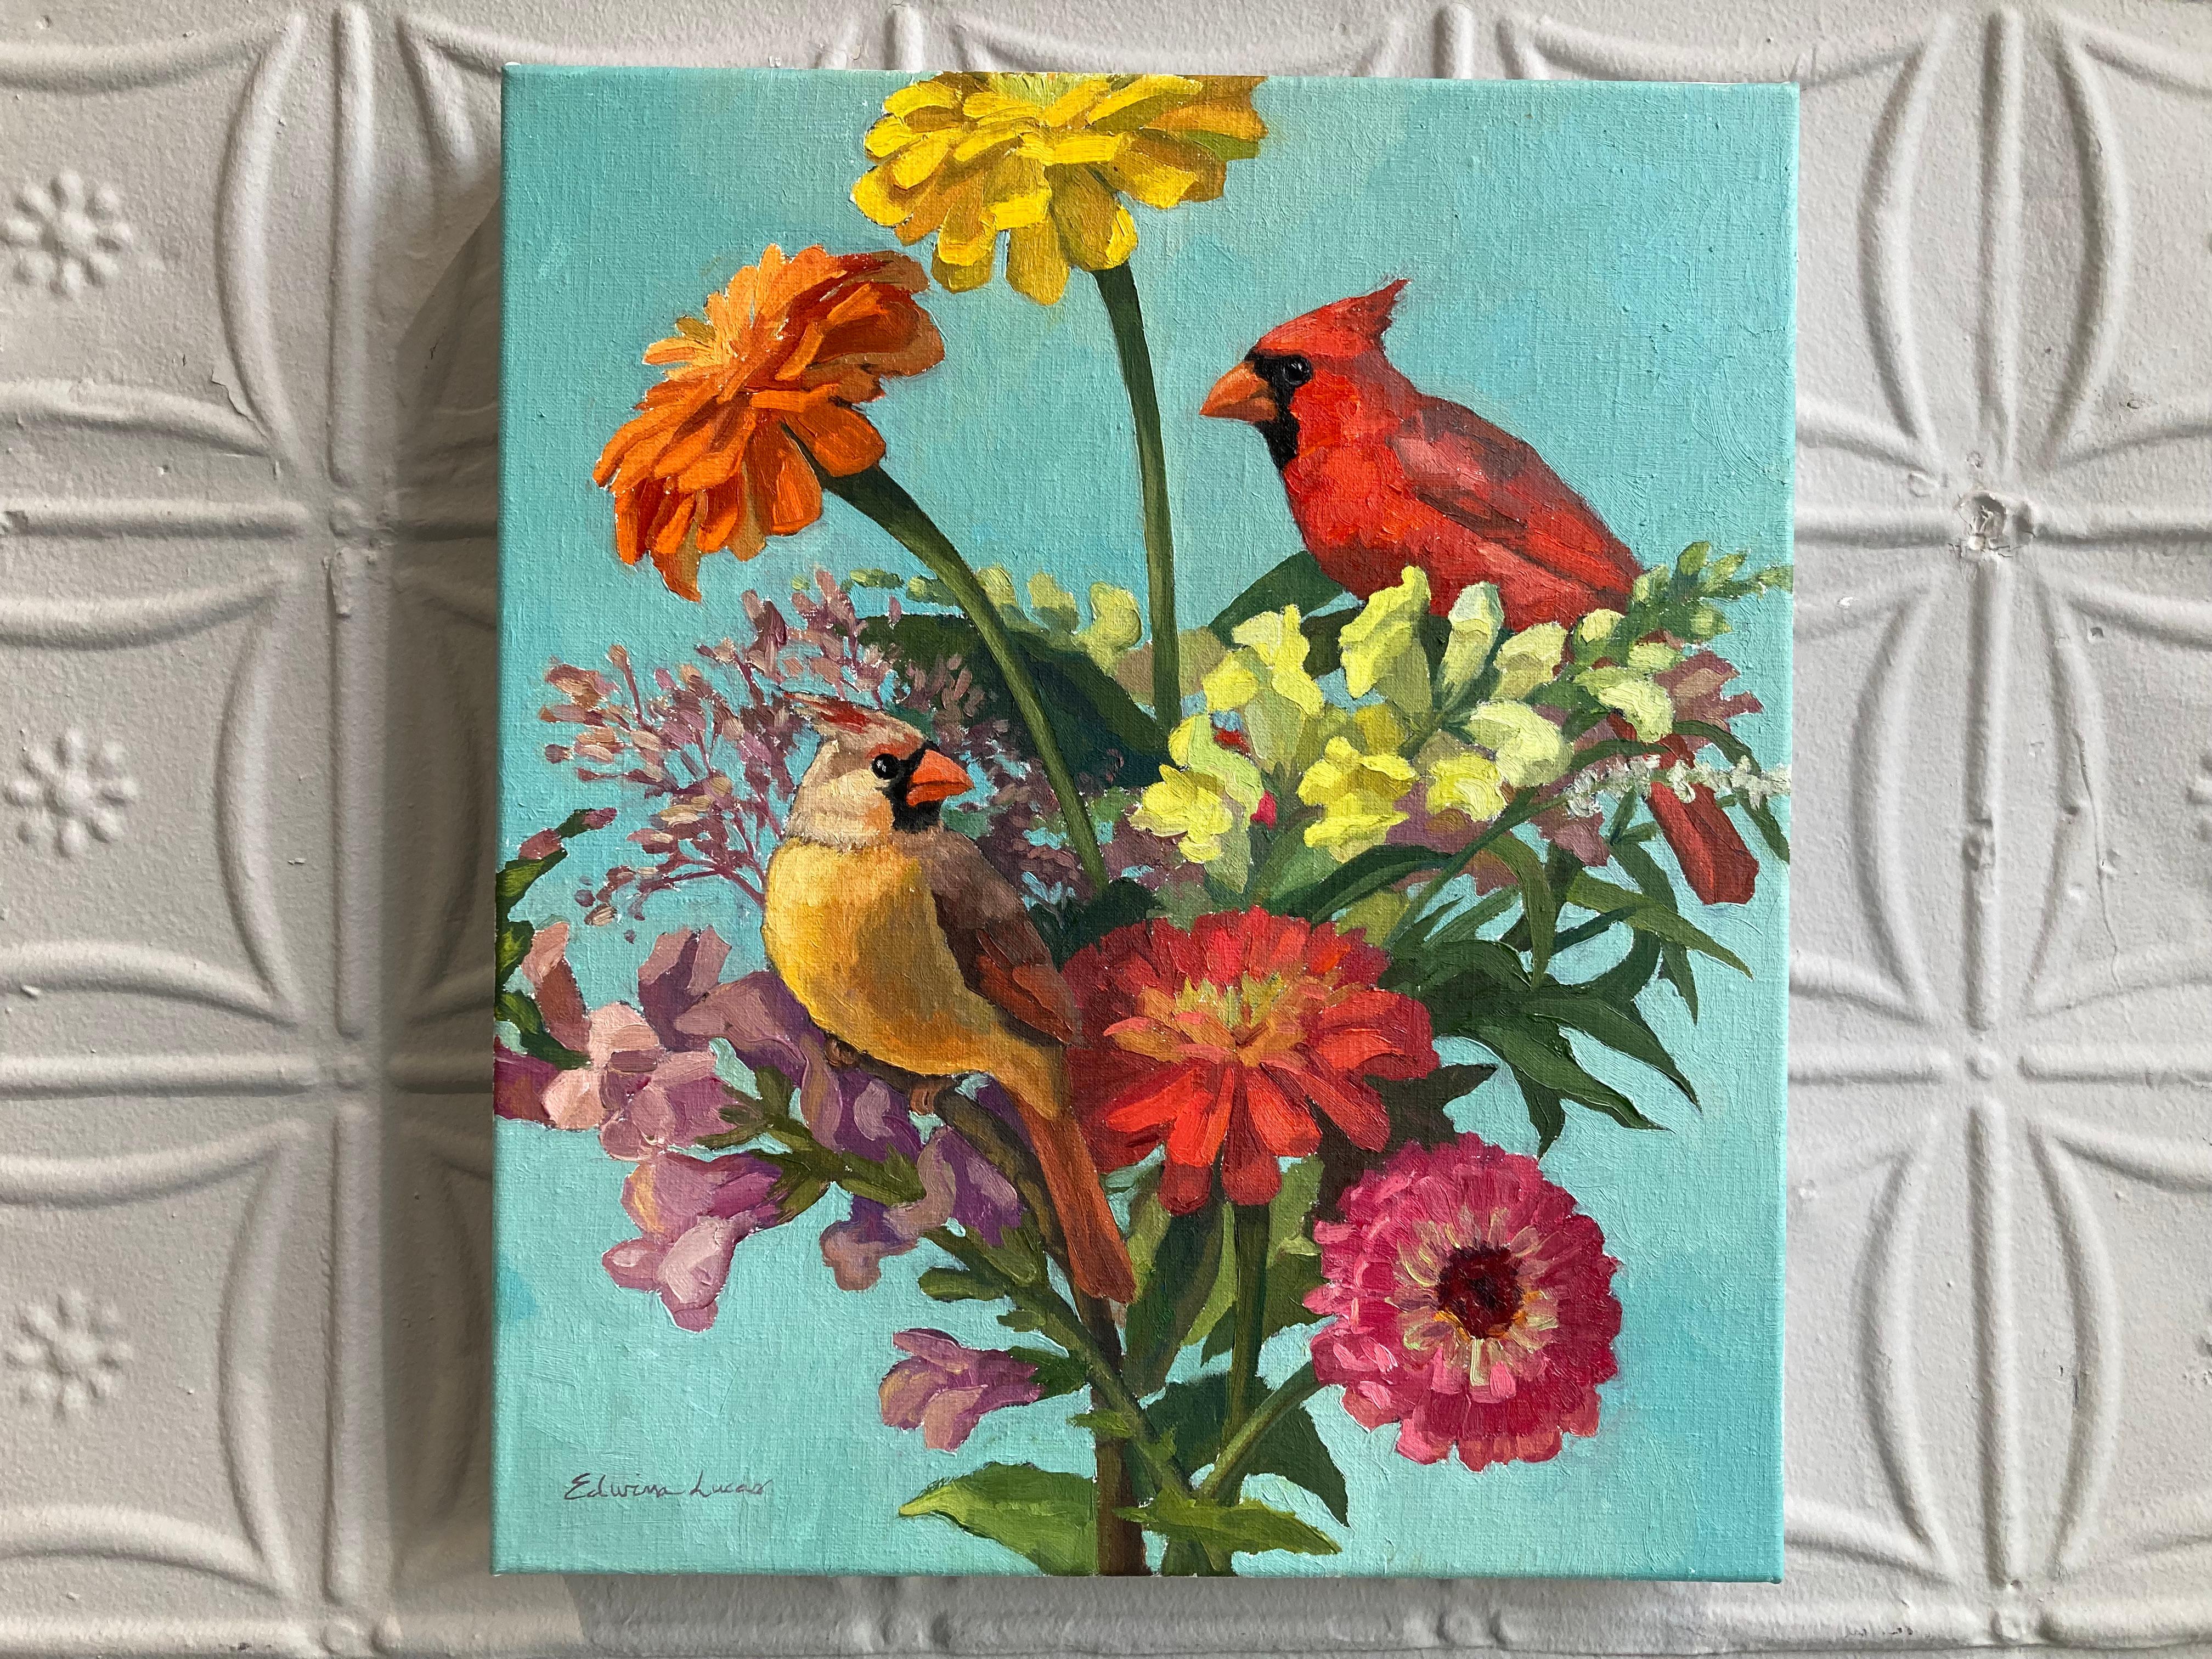 Zwei Kardinalvögel sitzen in diesem Gemälde des amerikanischen Realismus auf bunten Blumen. Ein abstrahierter blauer Hintergrund ermöglicht es dem Betrachter, sich auf das Stillleben zu konzentrieren. Lucas versteht es meisterhaft, eine chaotische